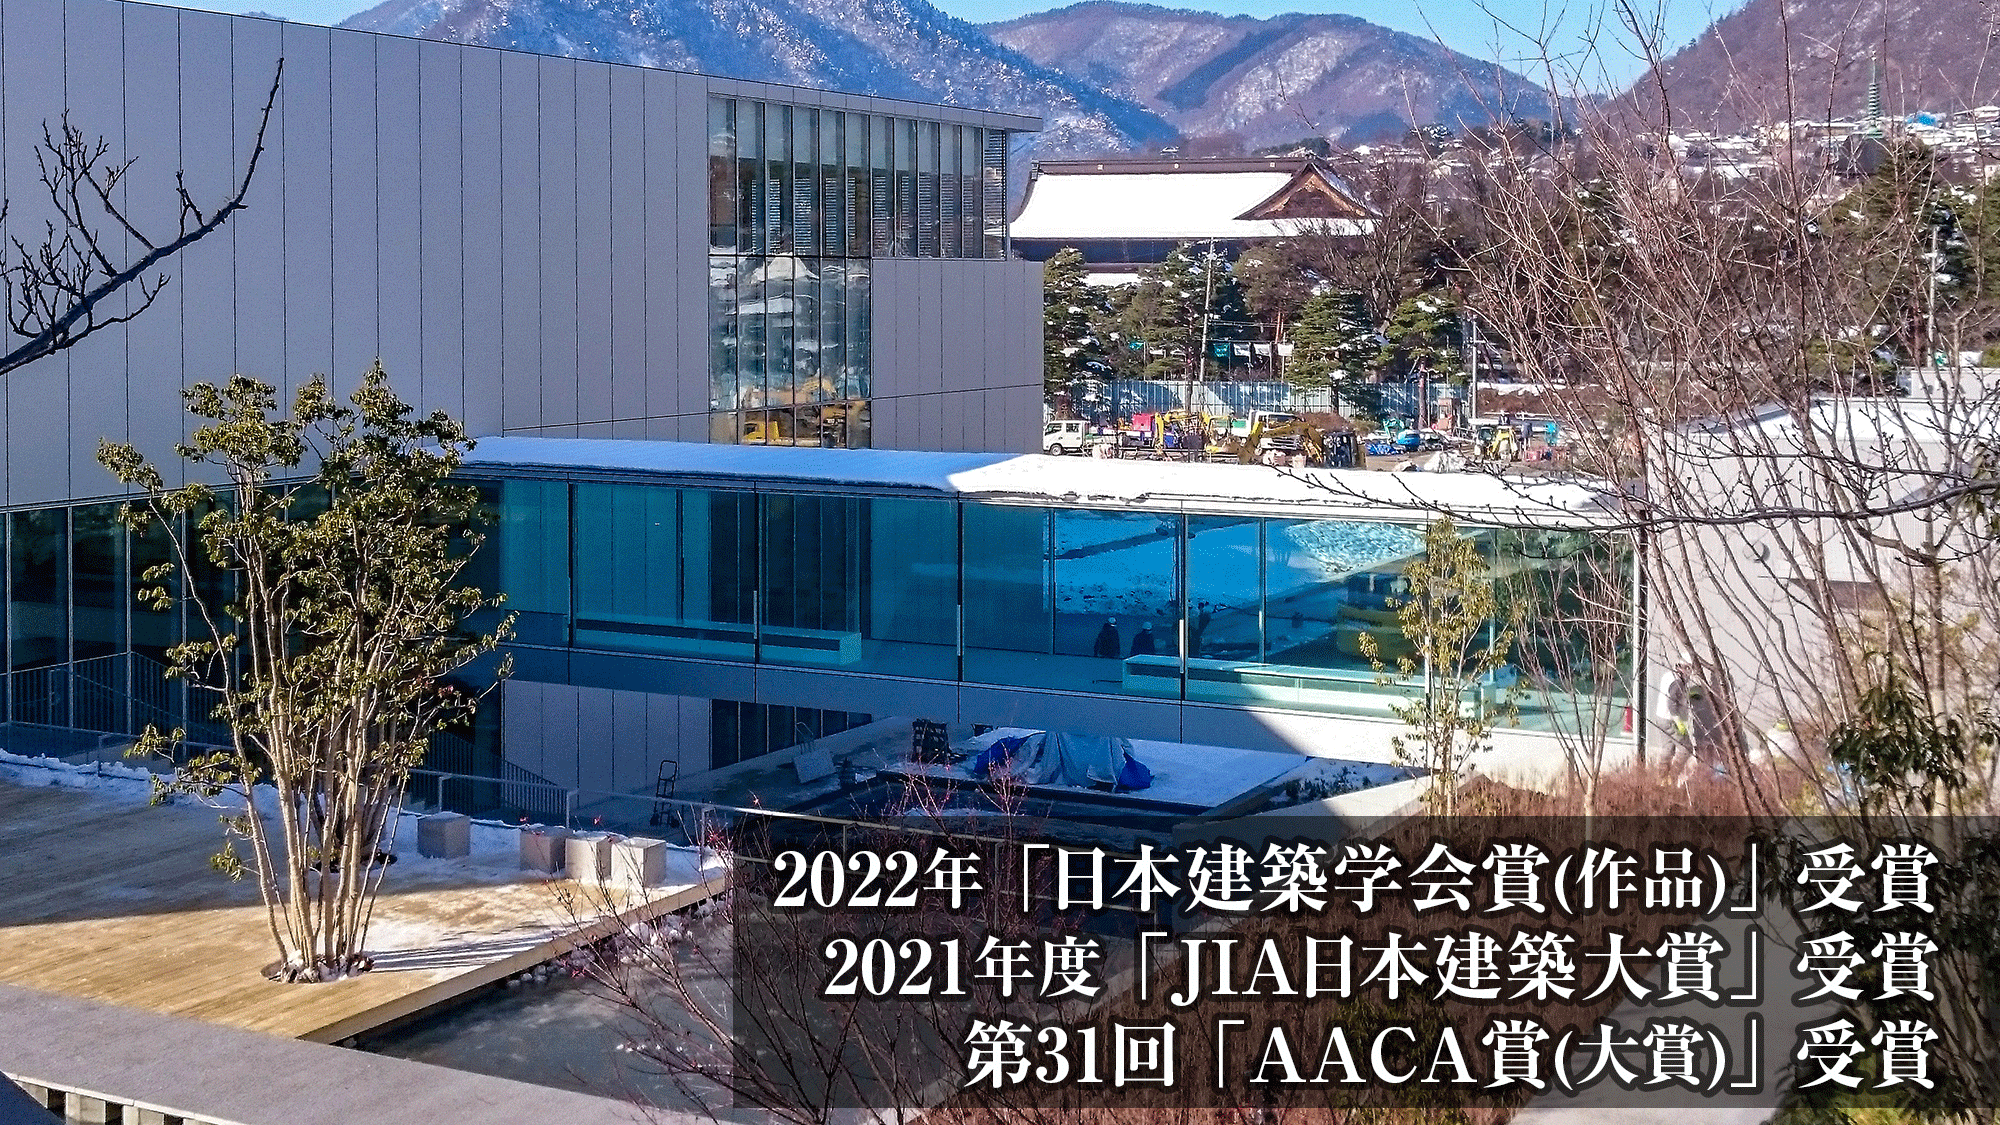 『長野県立美術館』国内3つの建築賞を受賞